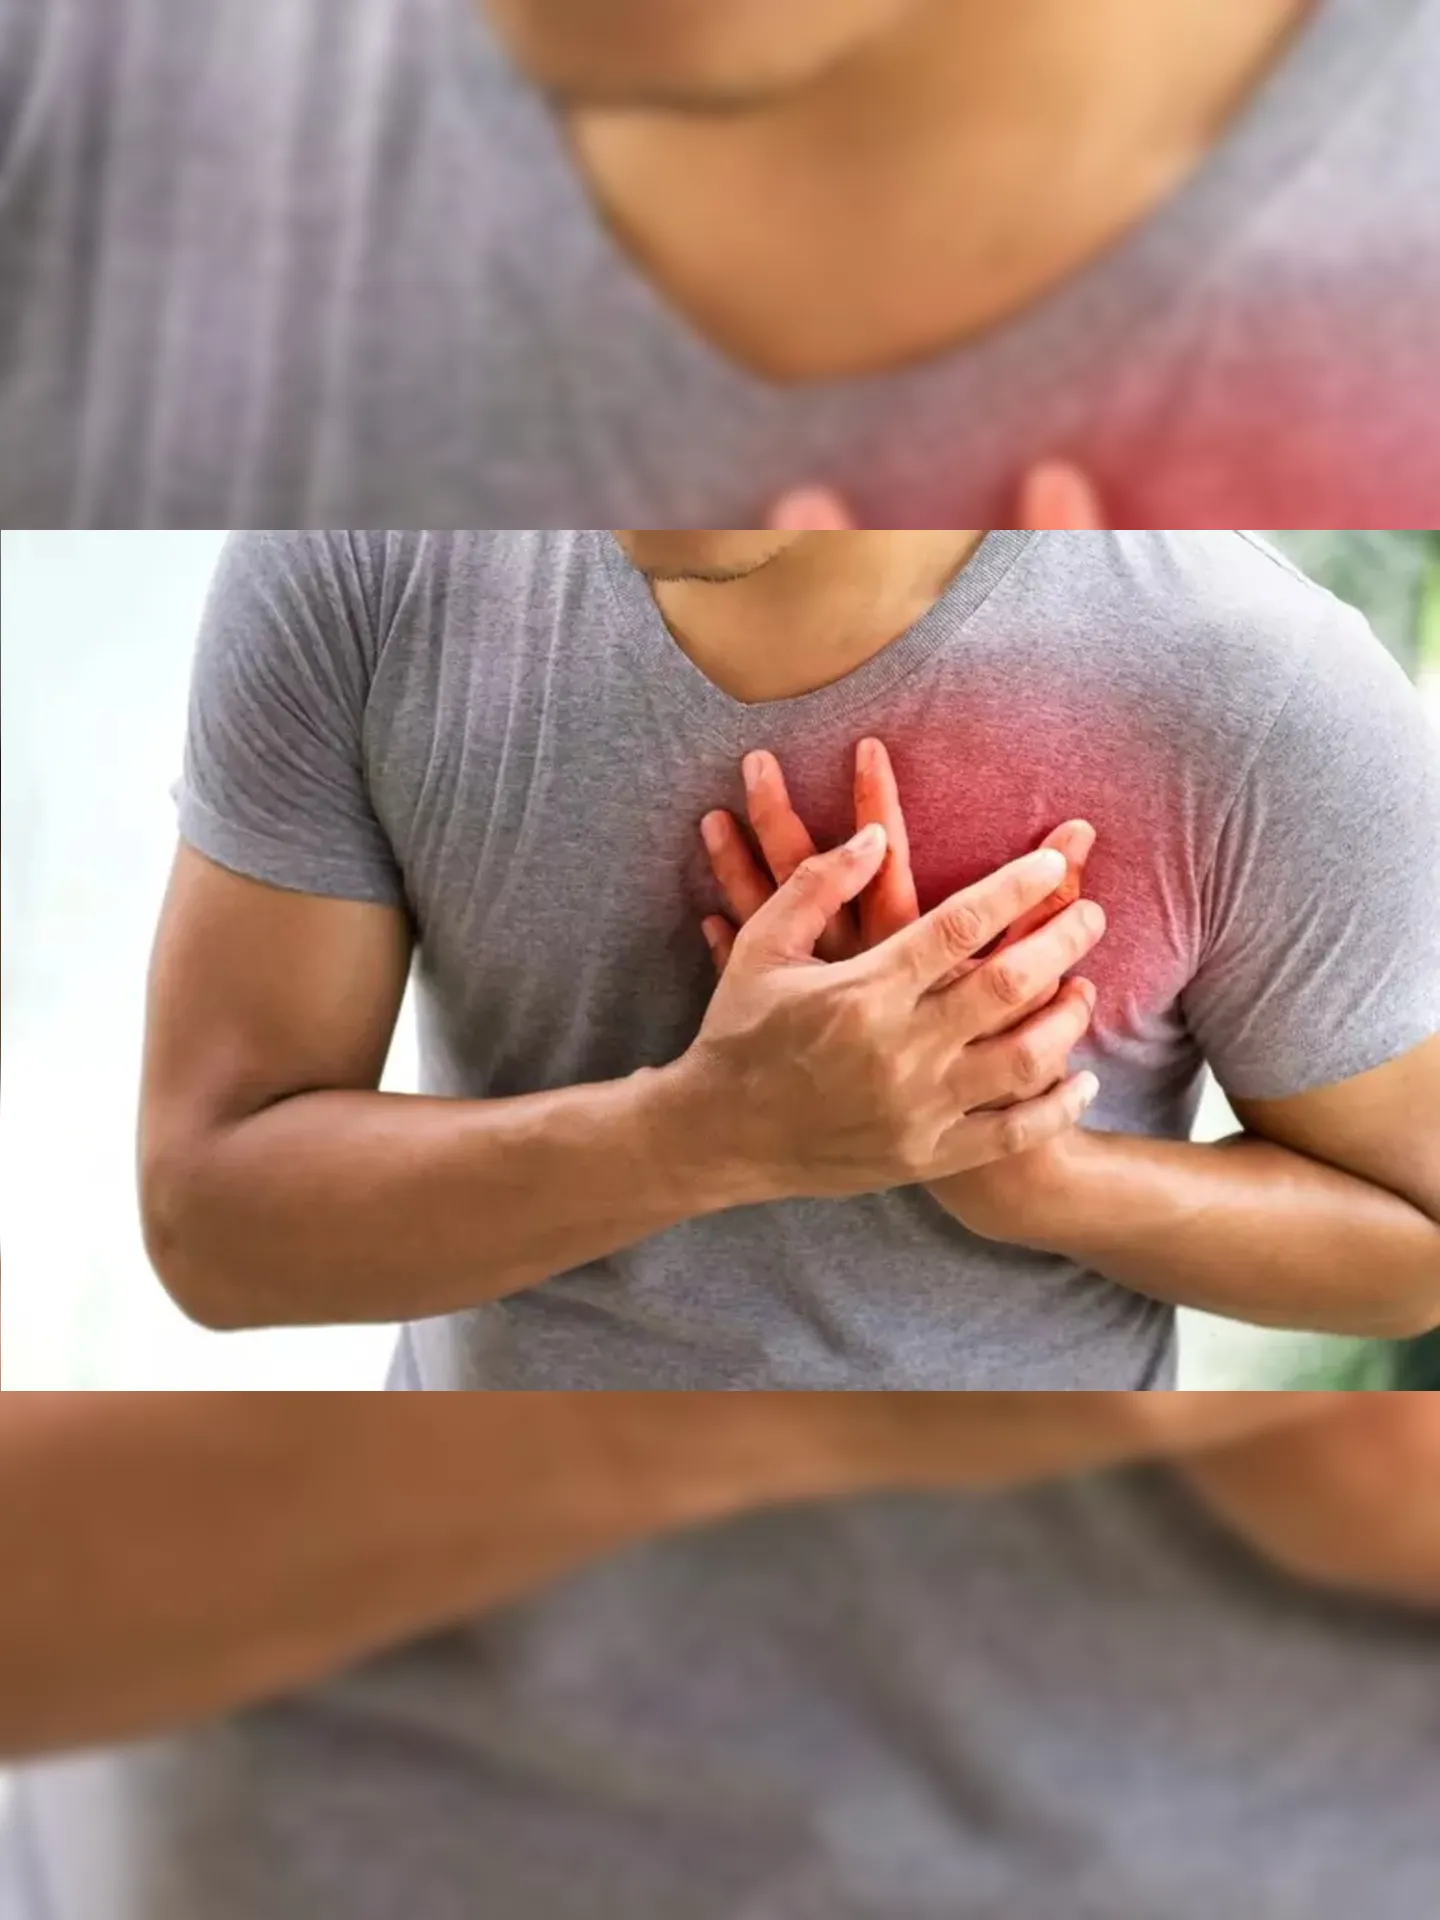 Existem sinais préviosque o organismo dá antes do infarto